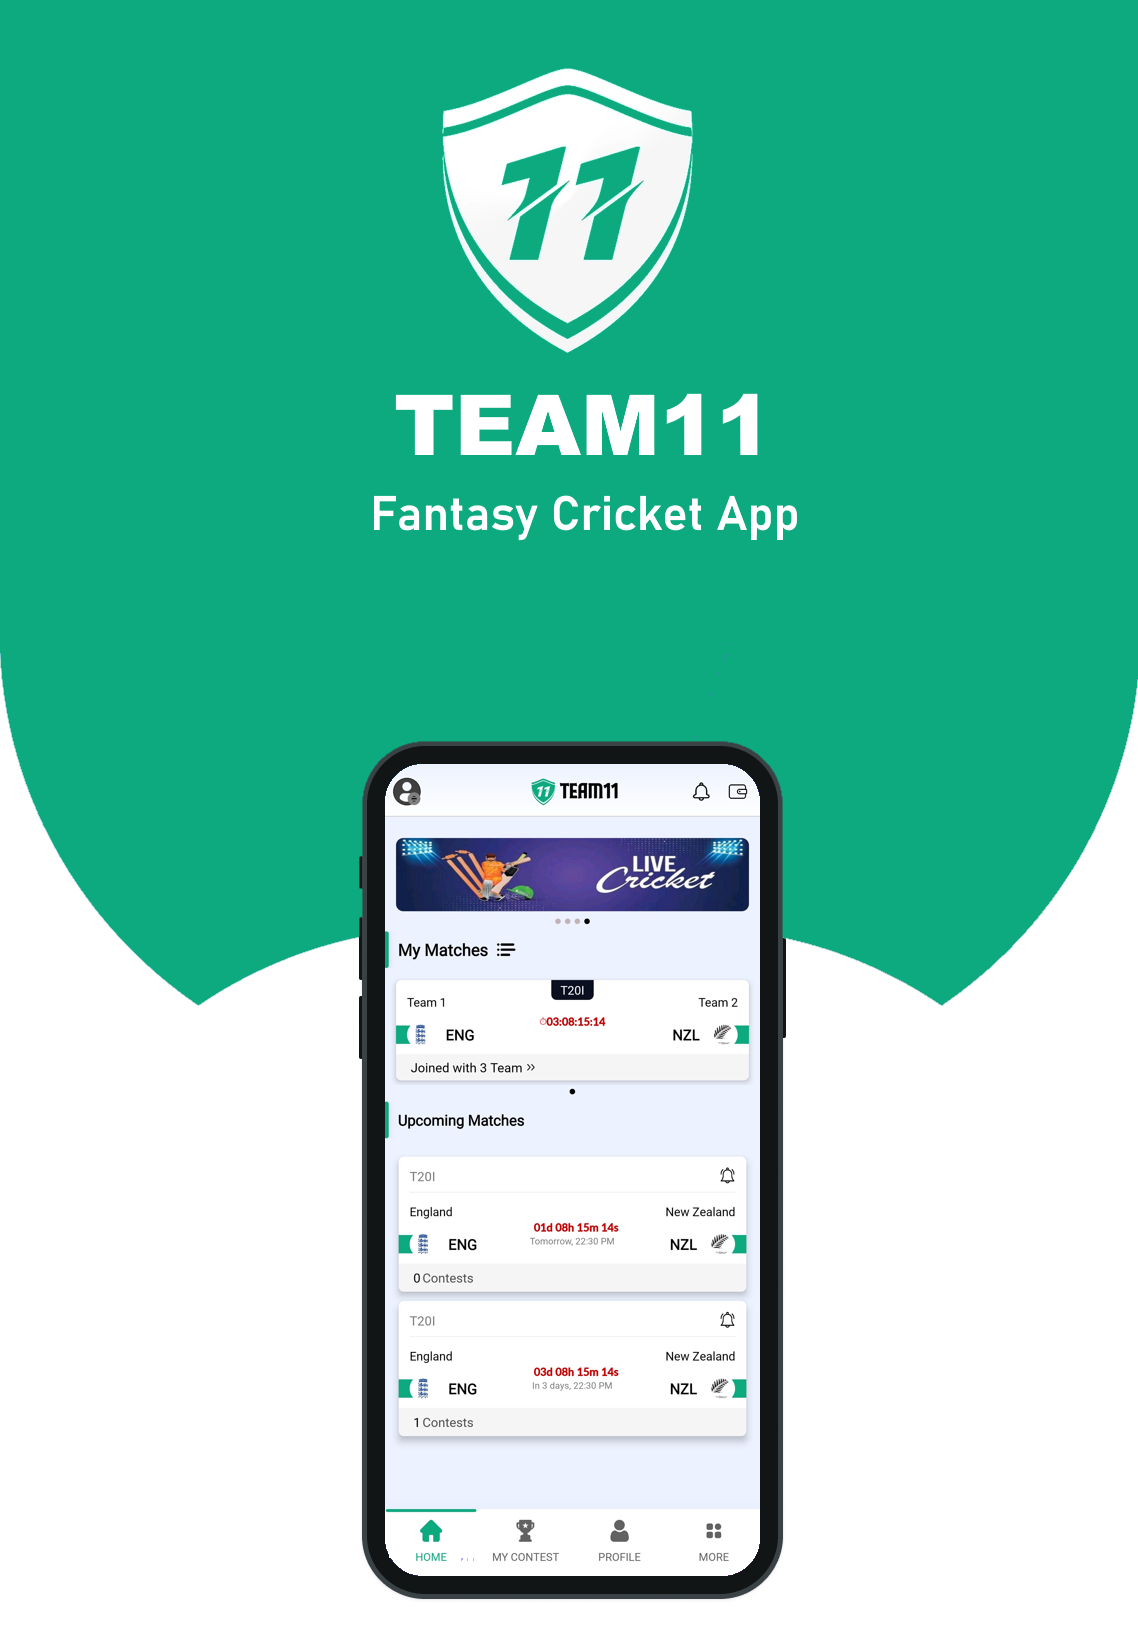 Team11 - Fantasy Cricket App